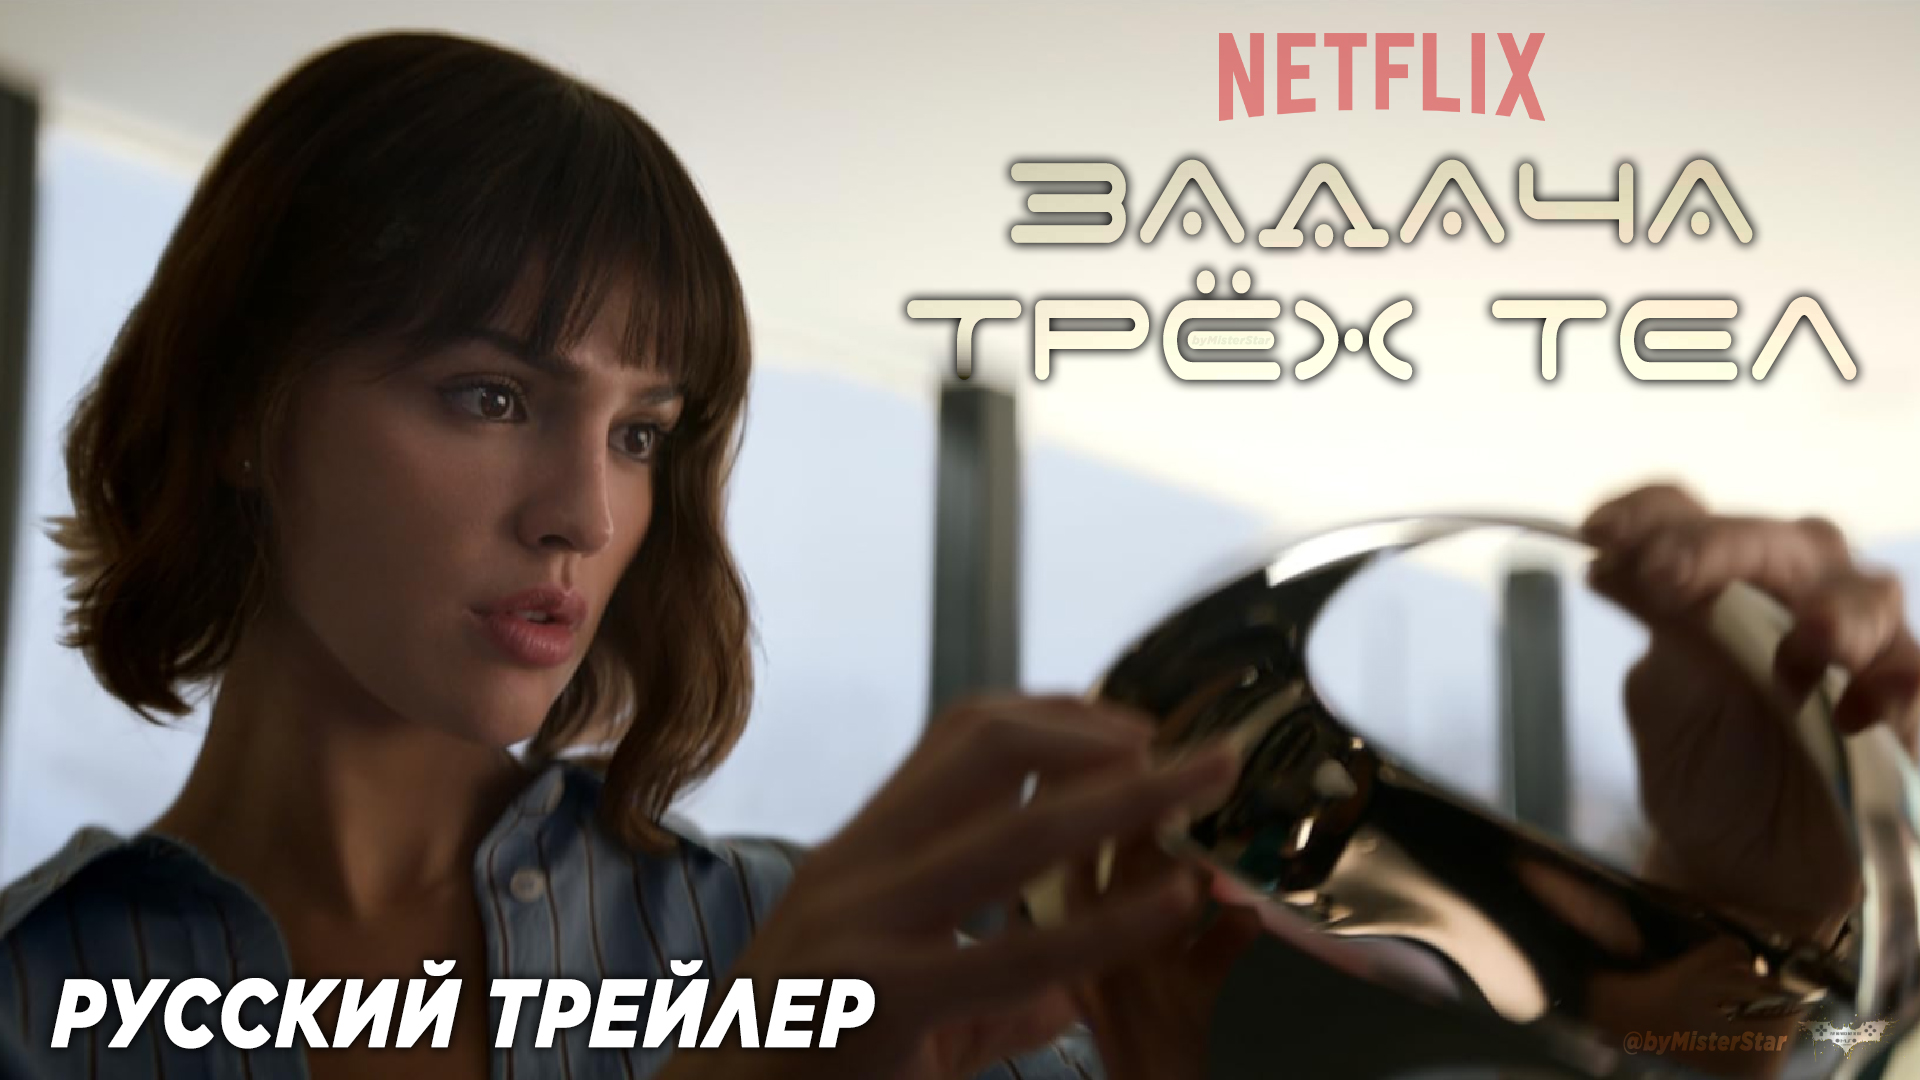 Задача трёх тел (мини–сериал 2024) (1 сезон) | Русский трейлер | Netflix